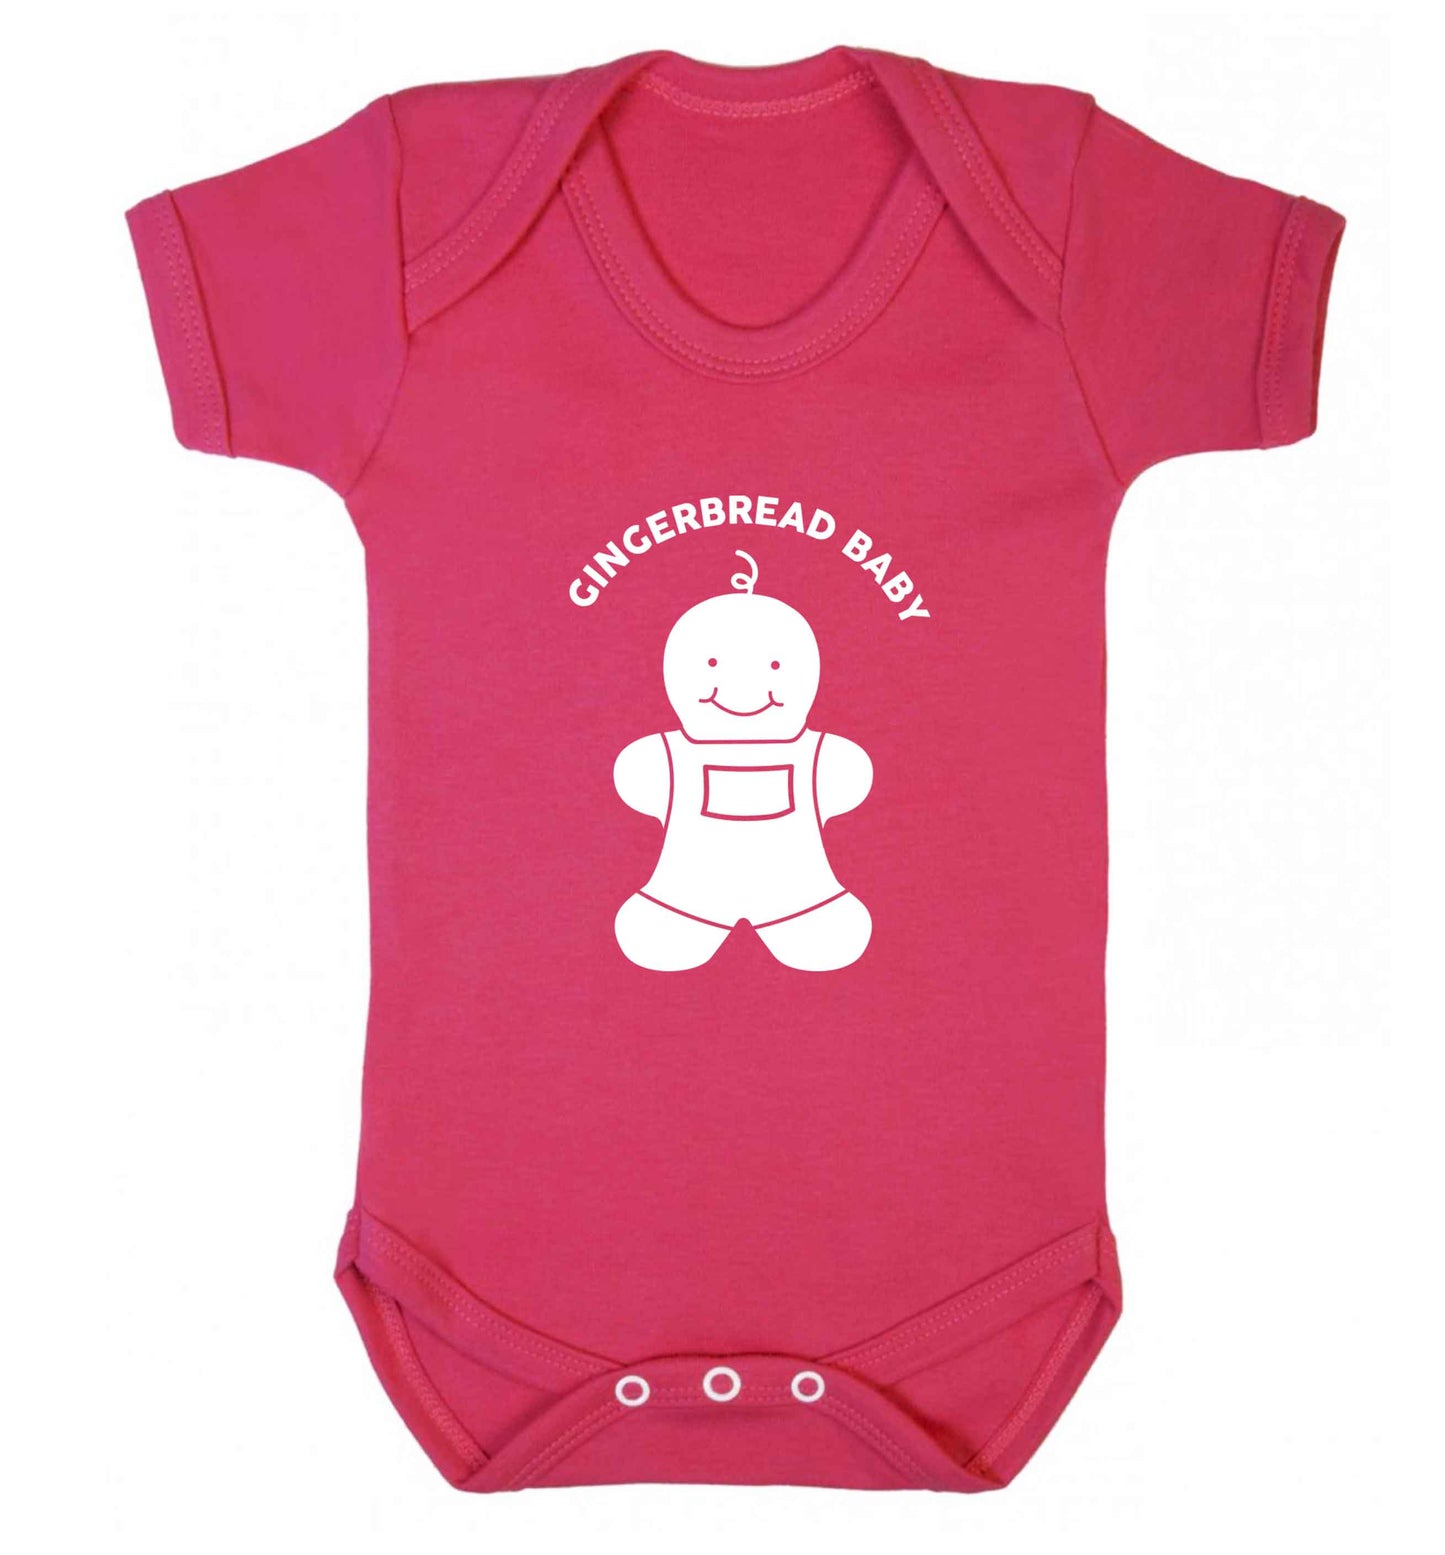 Gingerbread baby baby vest dark pink 18-24 months